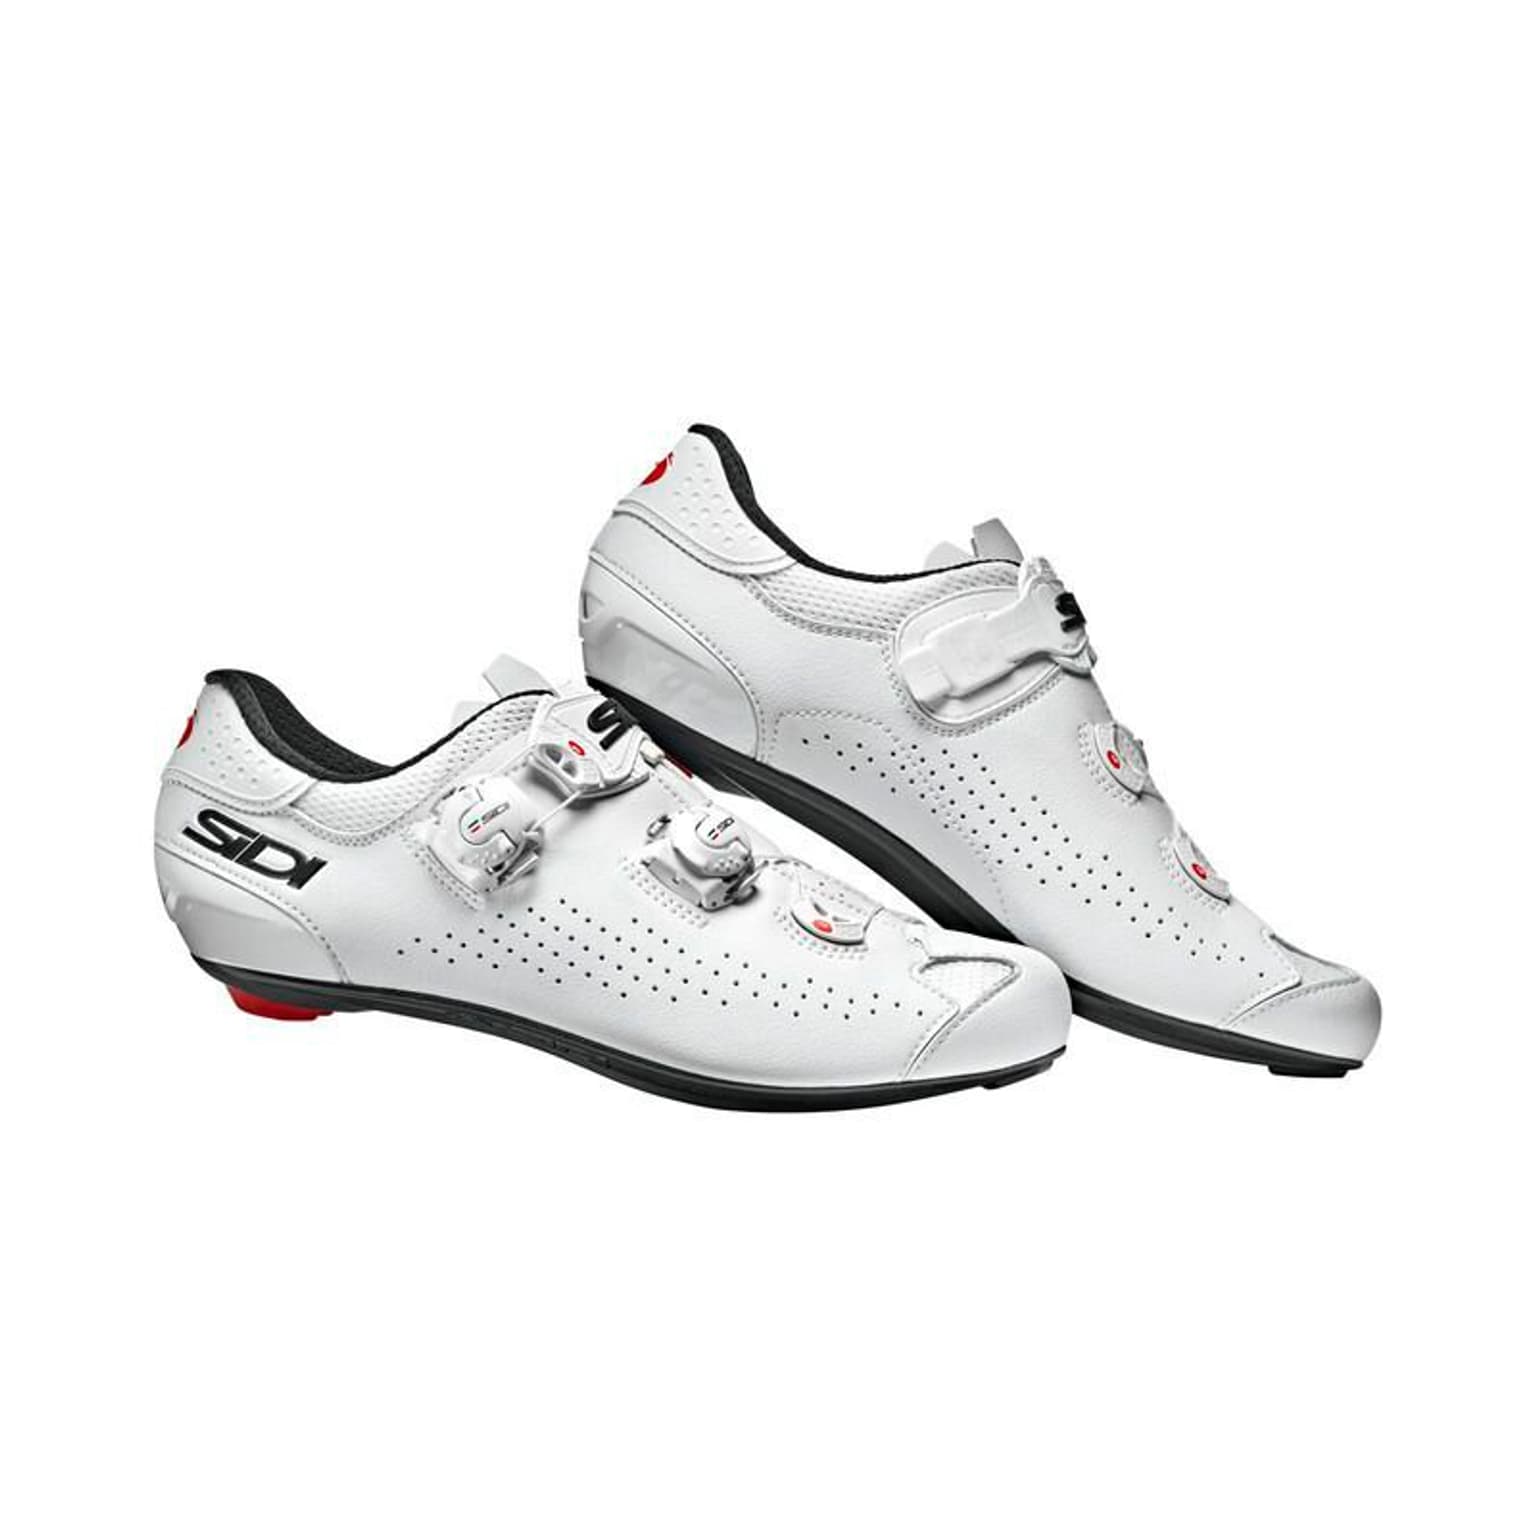 SIDI SIDI RR Genius 10 Carbon Composite Chaussures de cyclisme blanc 1